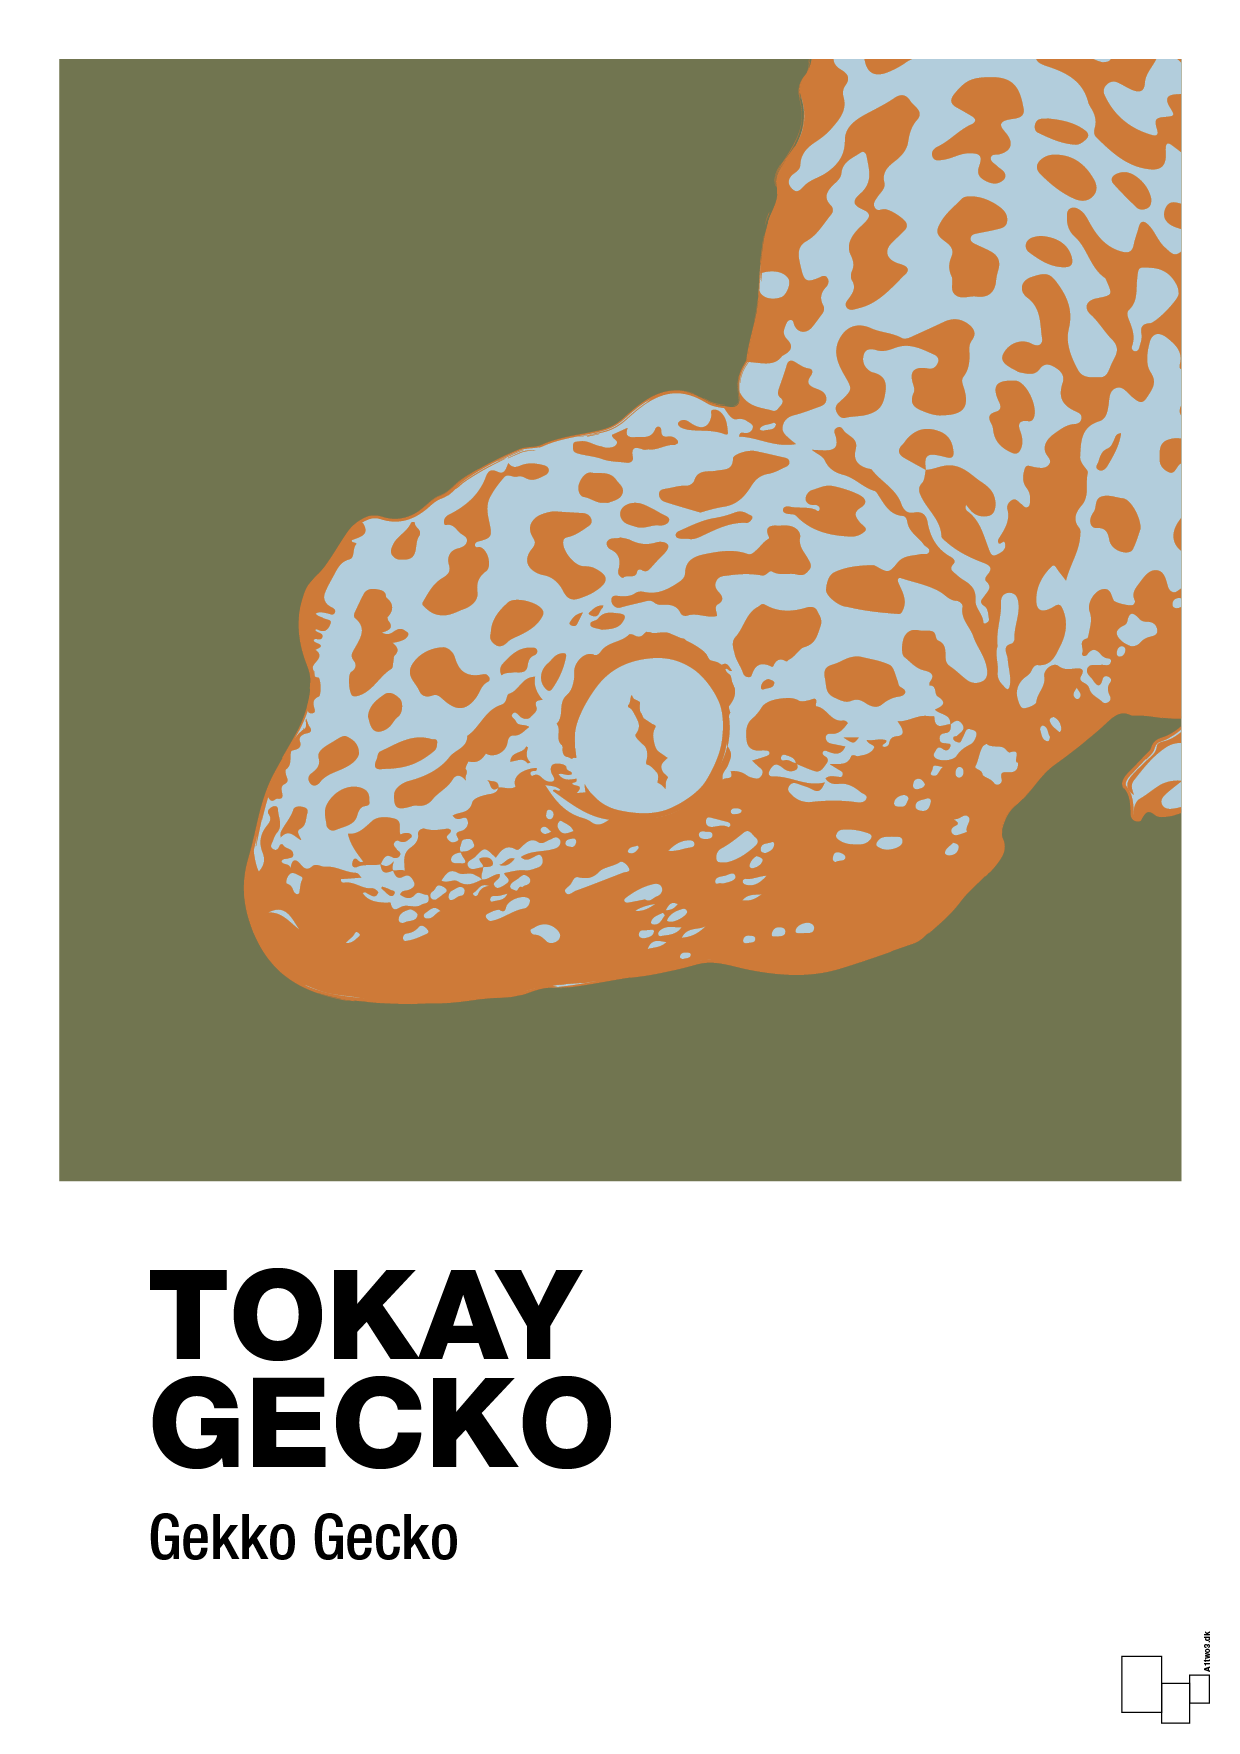 tokay gecko - Plakat med Videnskab i Secret Meadow